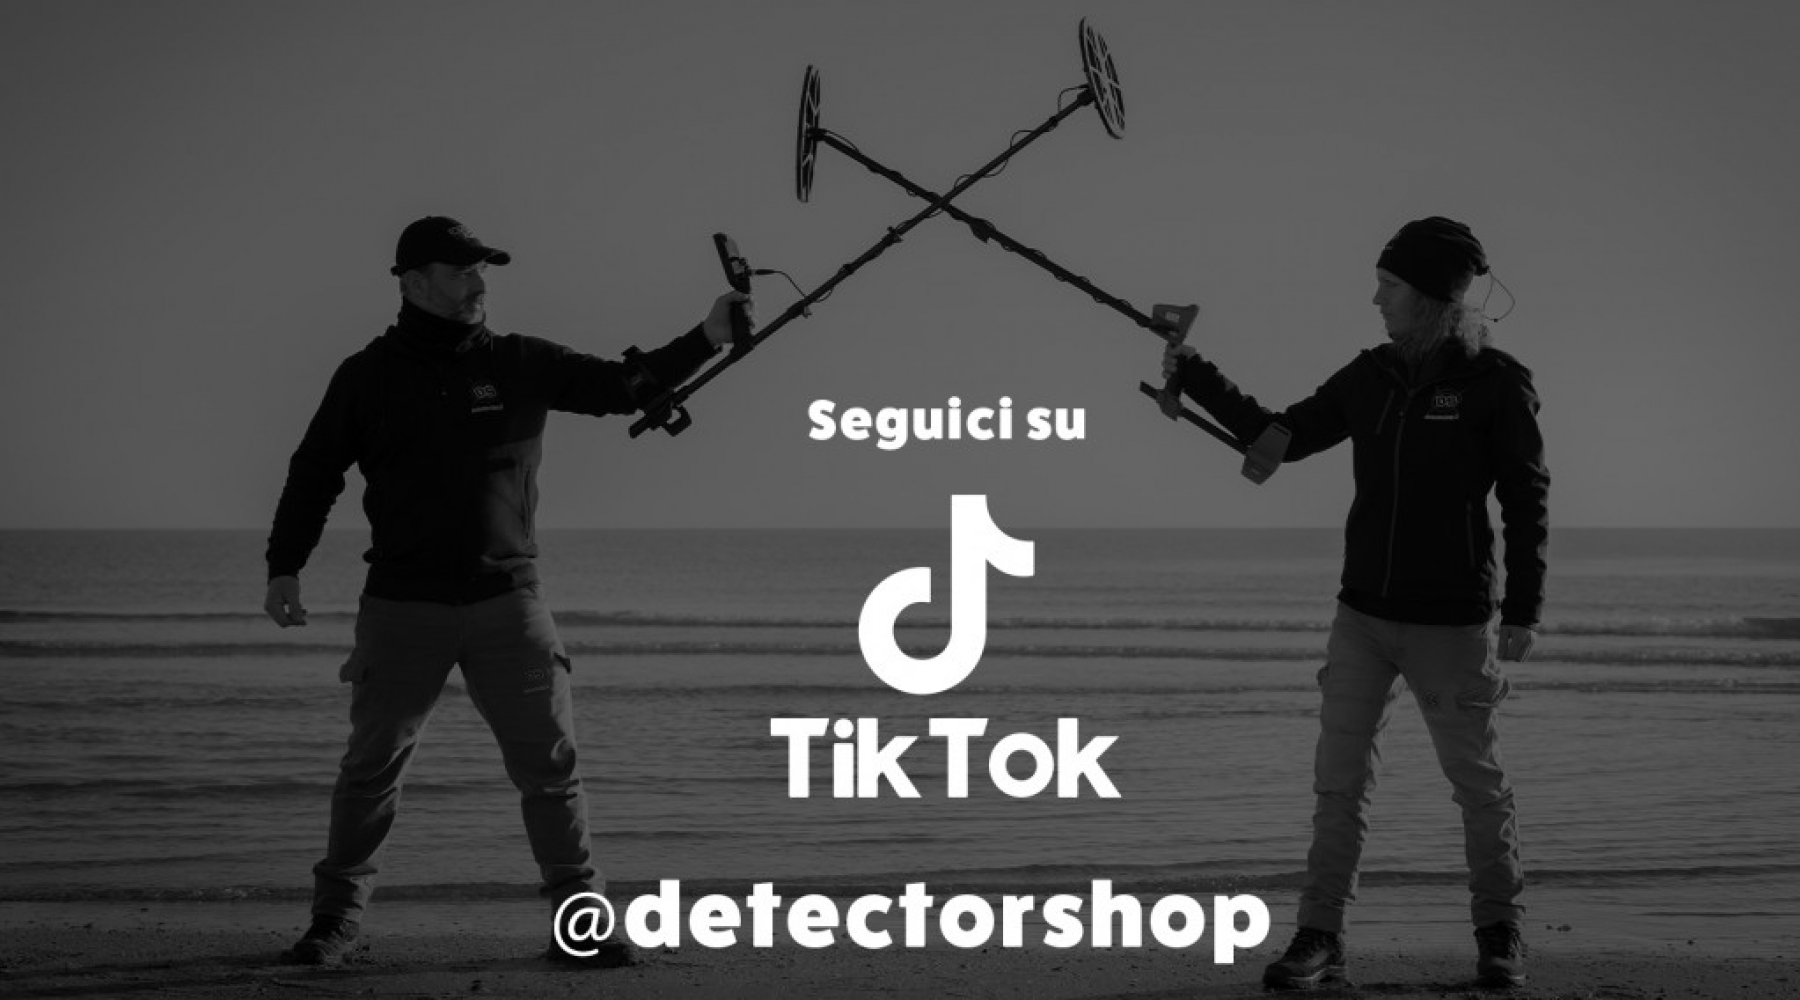 Esplora il Metal Detecting con Detectorshop su TikTok!